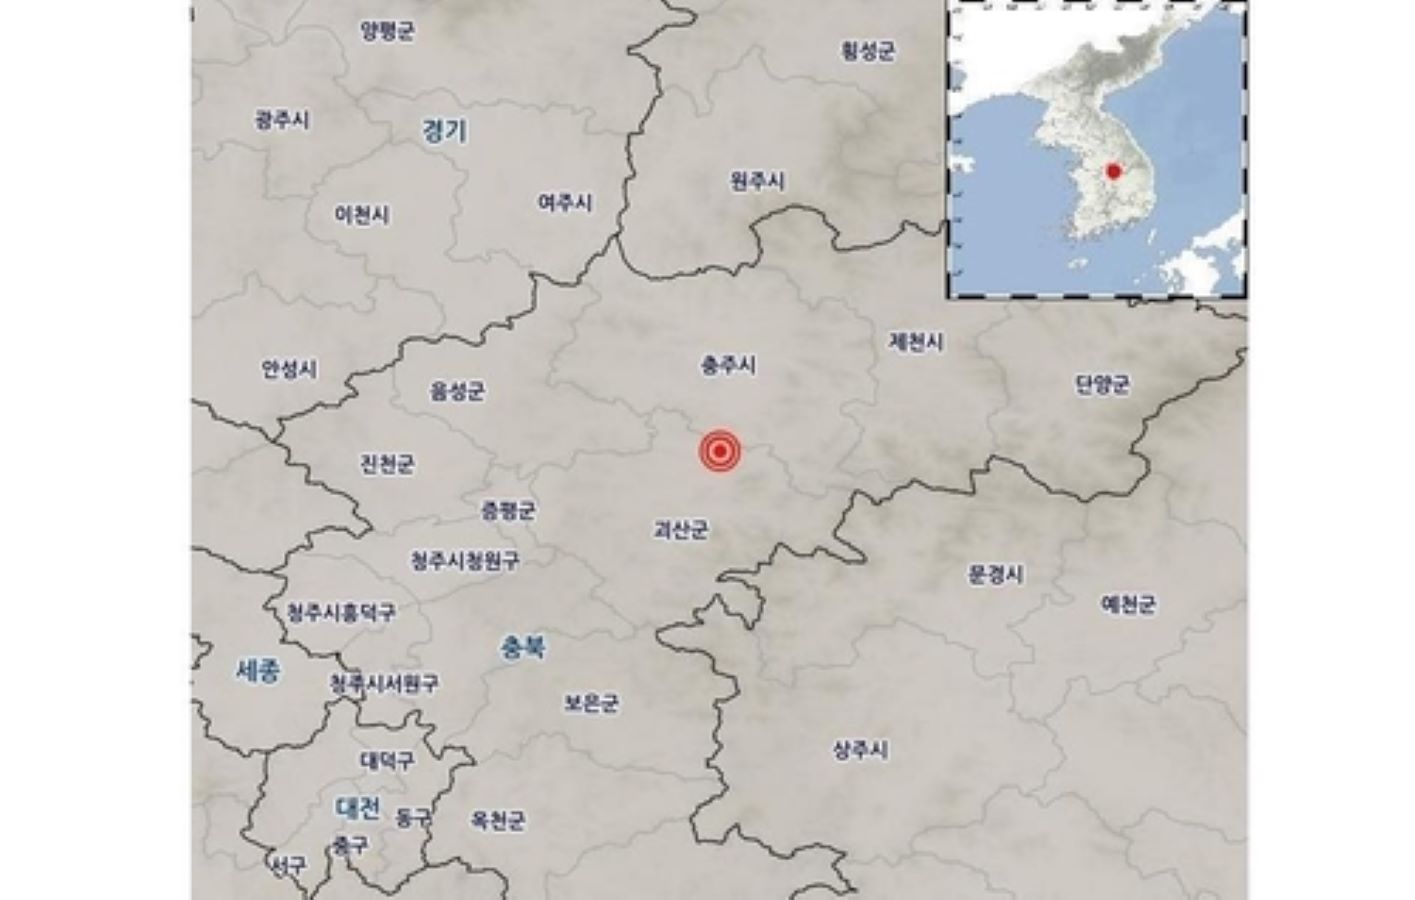 زلزال بقوة 4.1 درجة يضرب وسط كوريا الجنوبية